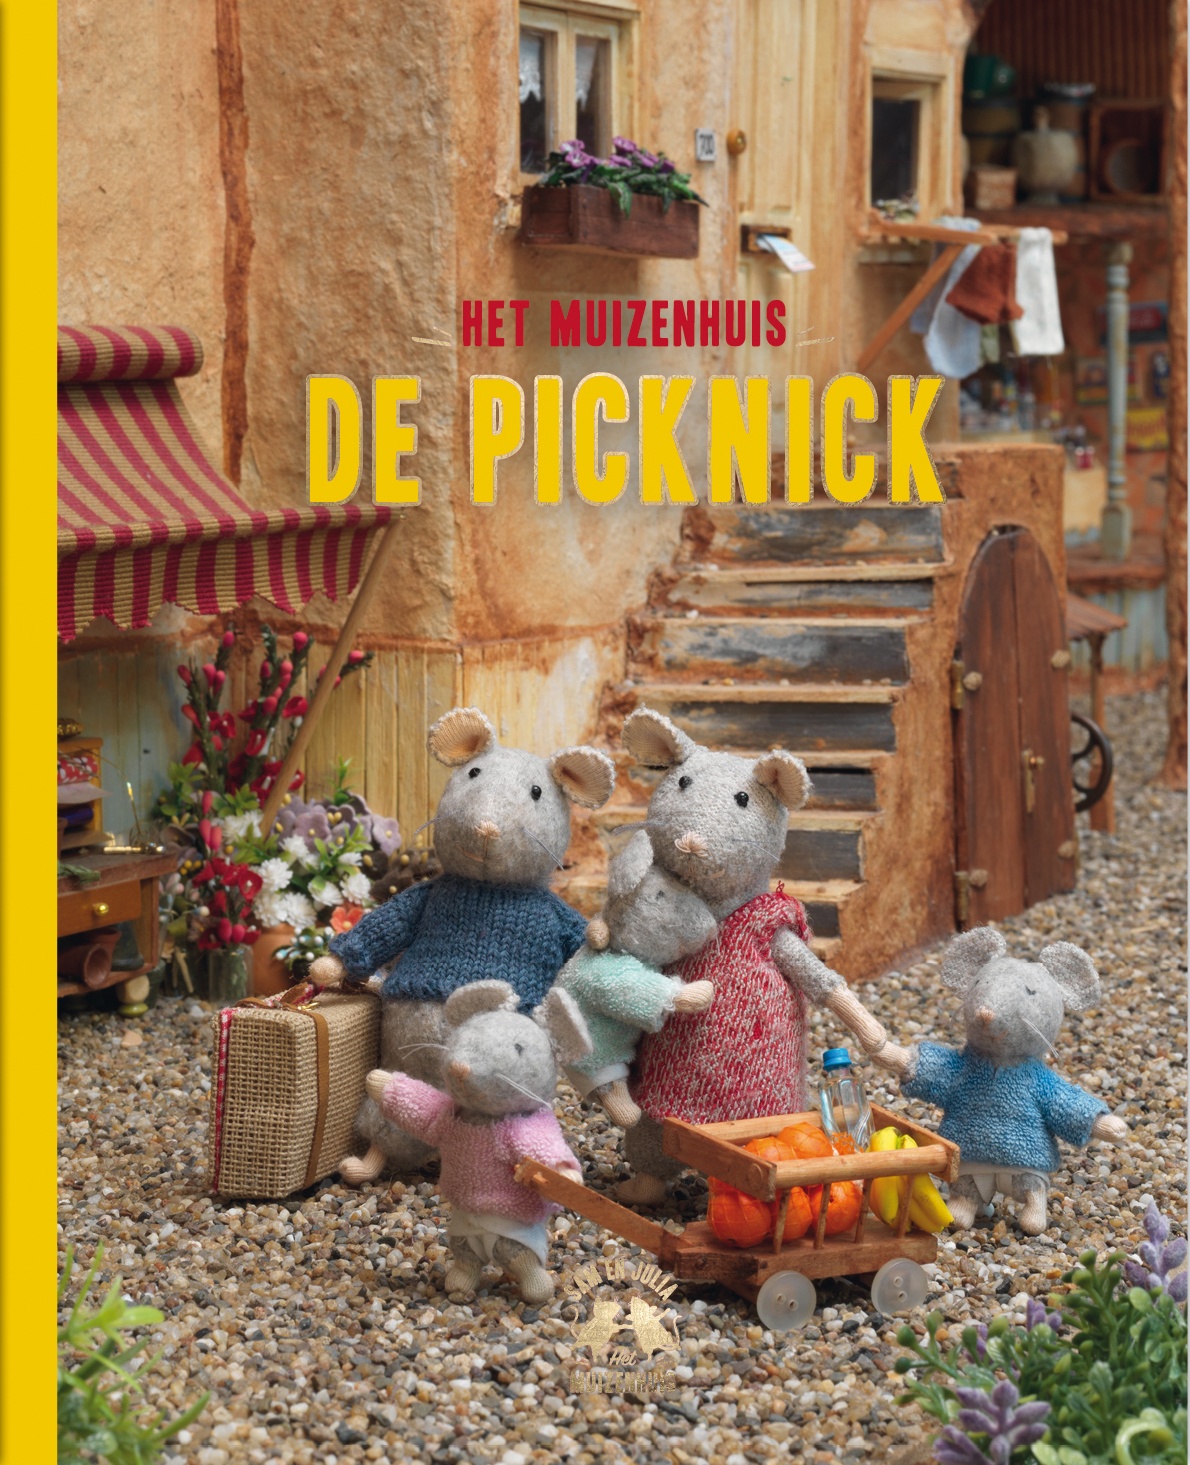 Je bekijkt nu Review: De picknick (het muizenhuis)